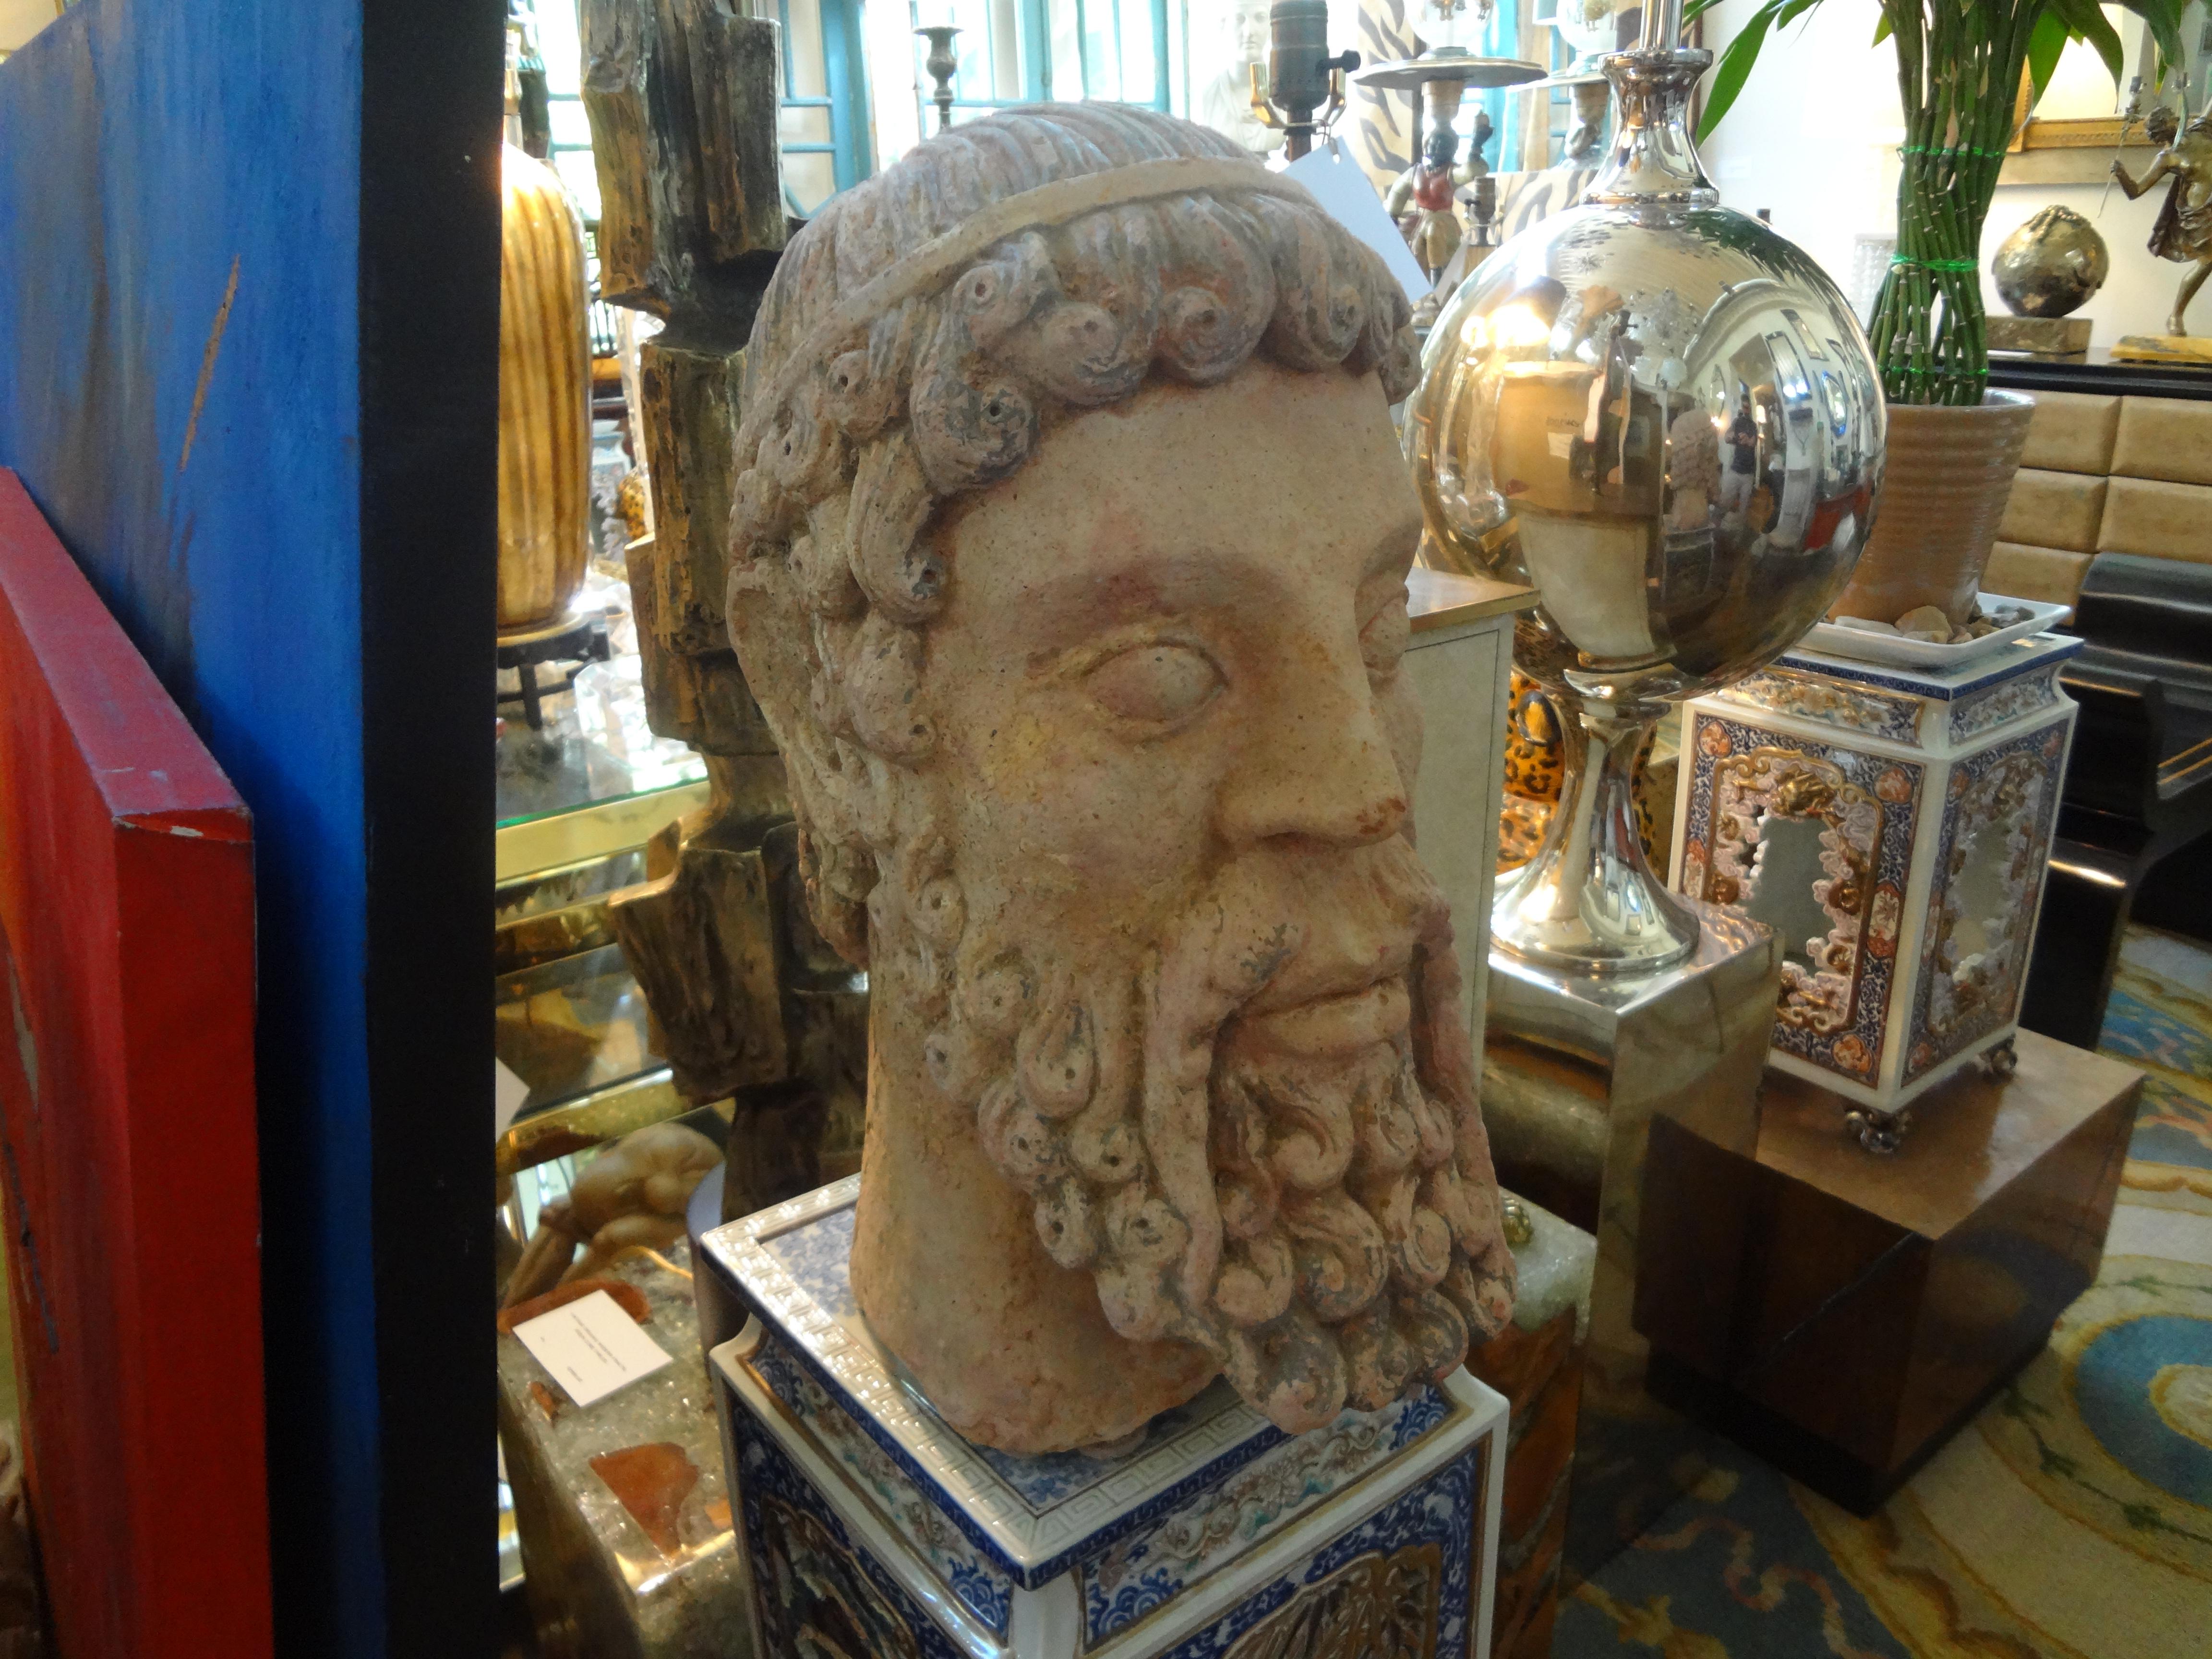 Beau et grand buste italien antique en terre cuite d'un ancien Greco, Romain. Cette sculpture étonnante est bien exécutée et présente quelques restaurations à la base qui lui donnent un aspect beaucoup plus ancien.